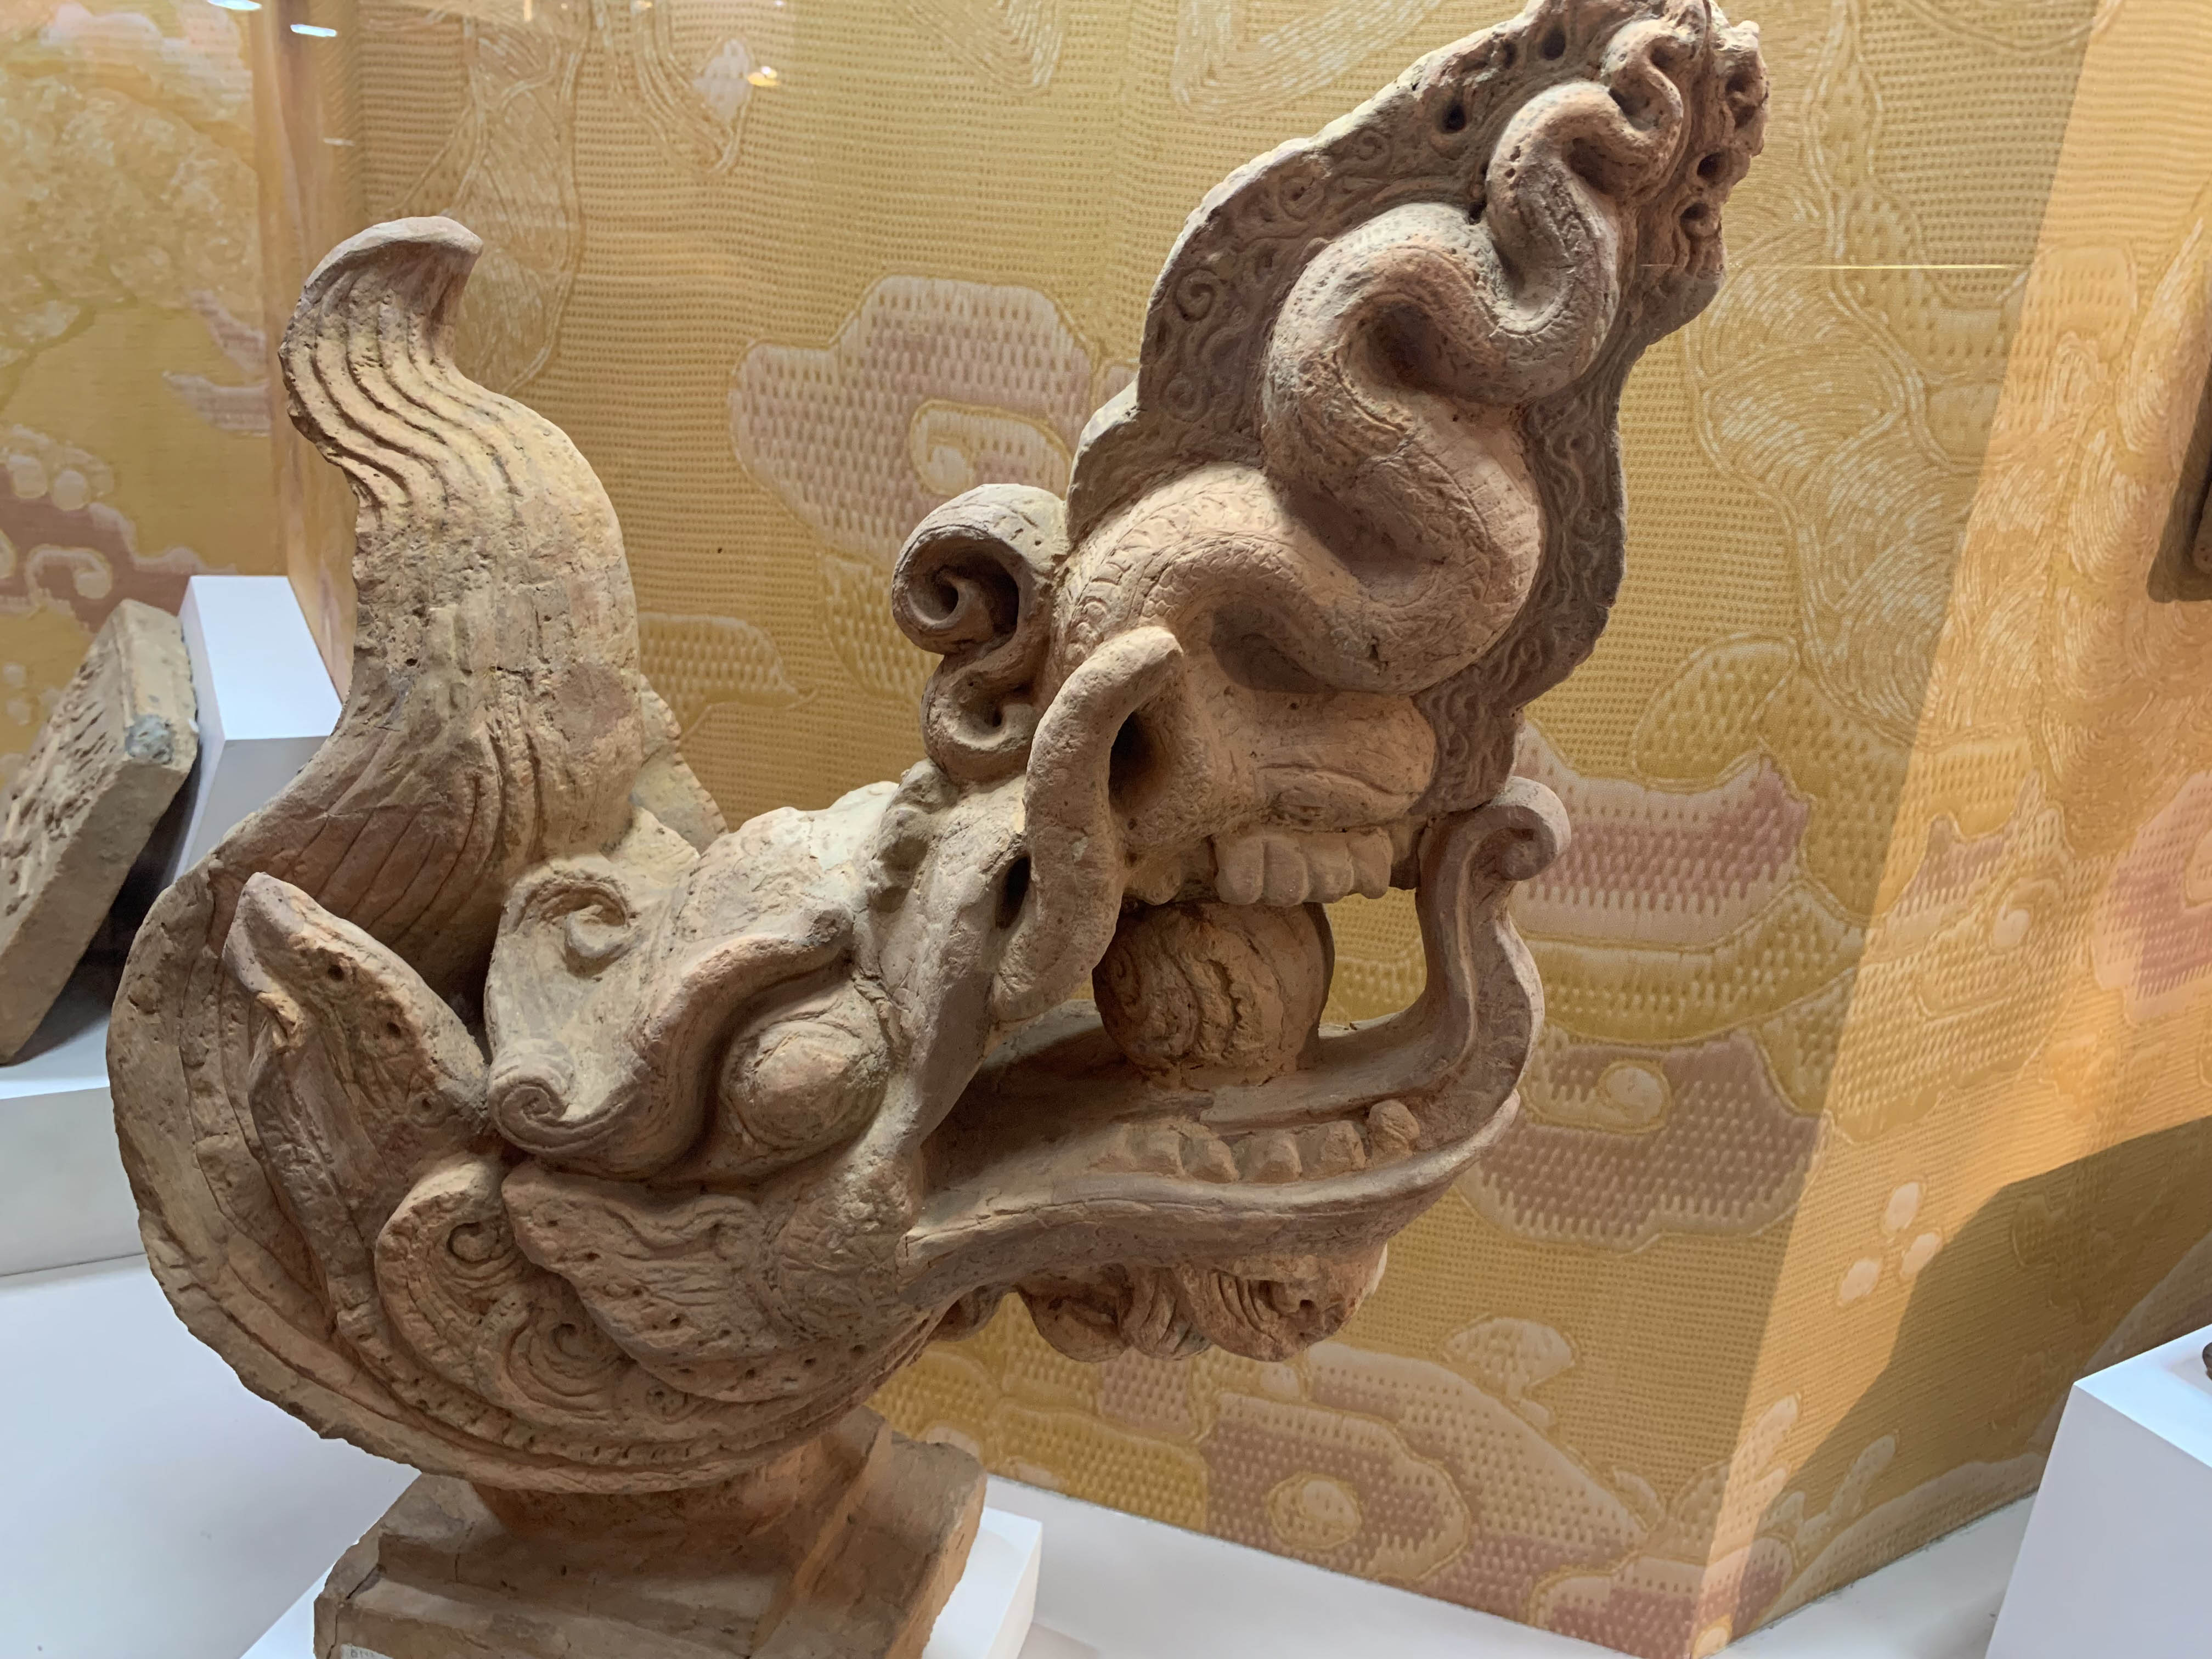 Đầu rồng bằng đất nung thời Trần dùng để trang trí trên cung điện ở Hoàng thành Thăng Long. Đầu rồng thường làm bằng gốm, đất nung tạo sự hoành tráng và vẻ đẹp nghệ thuật của công trình kiến trúc từ phía xa.